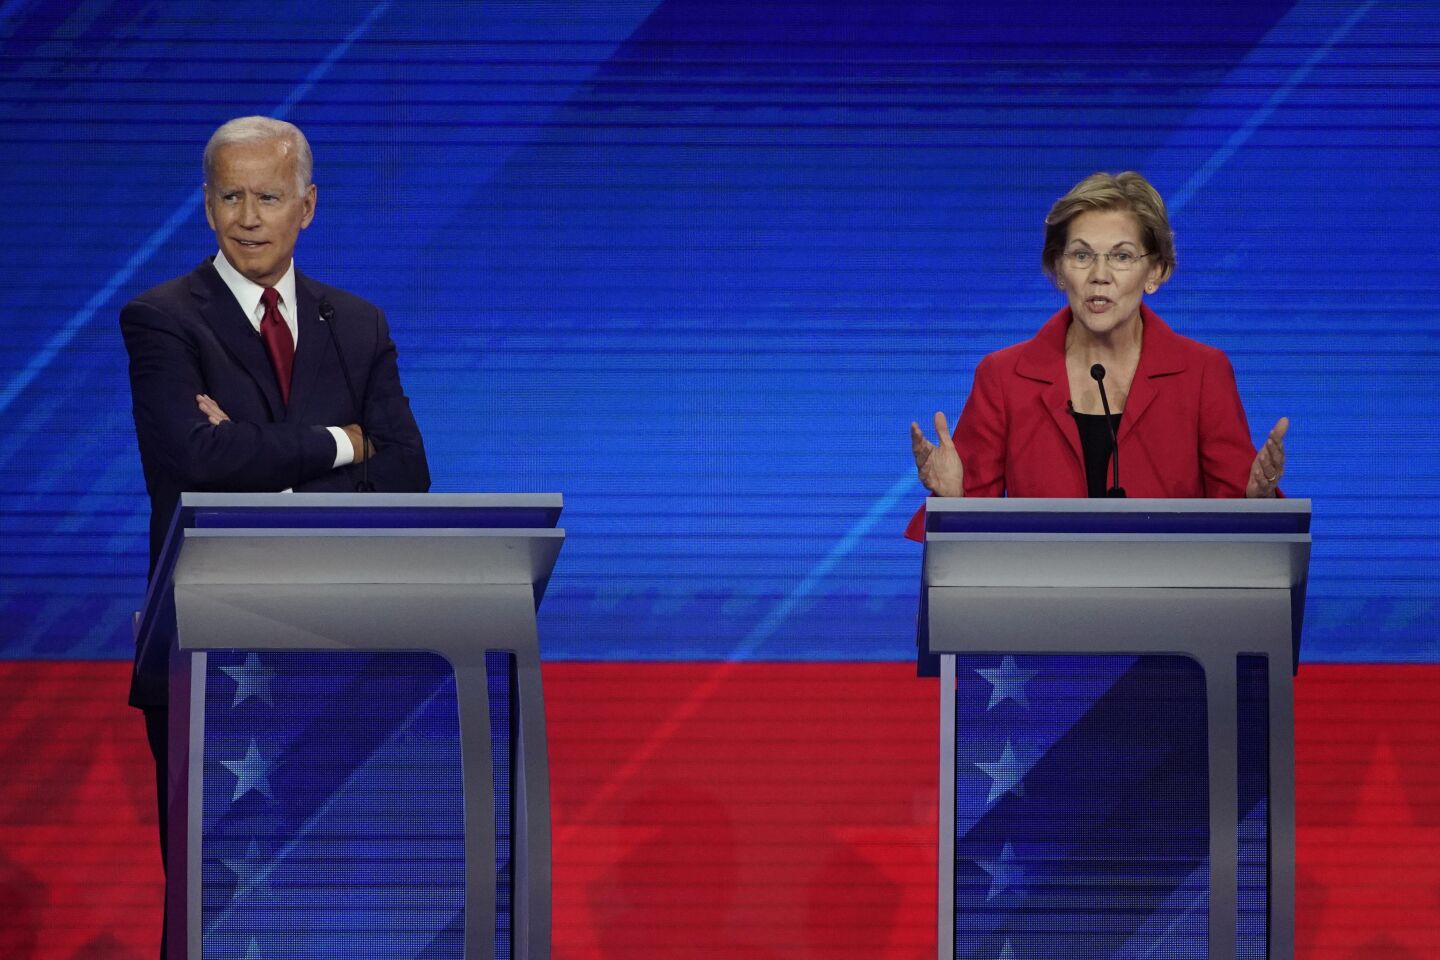 Joe Biden listens as Elizabeth Warren speaks.